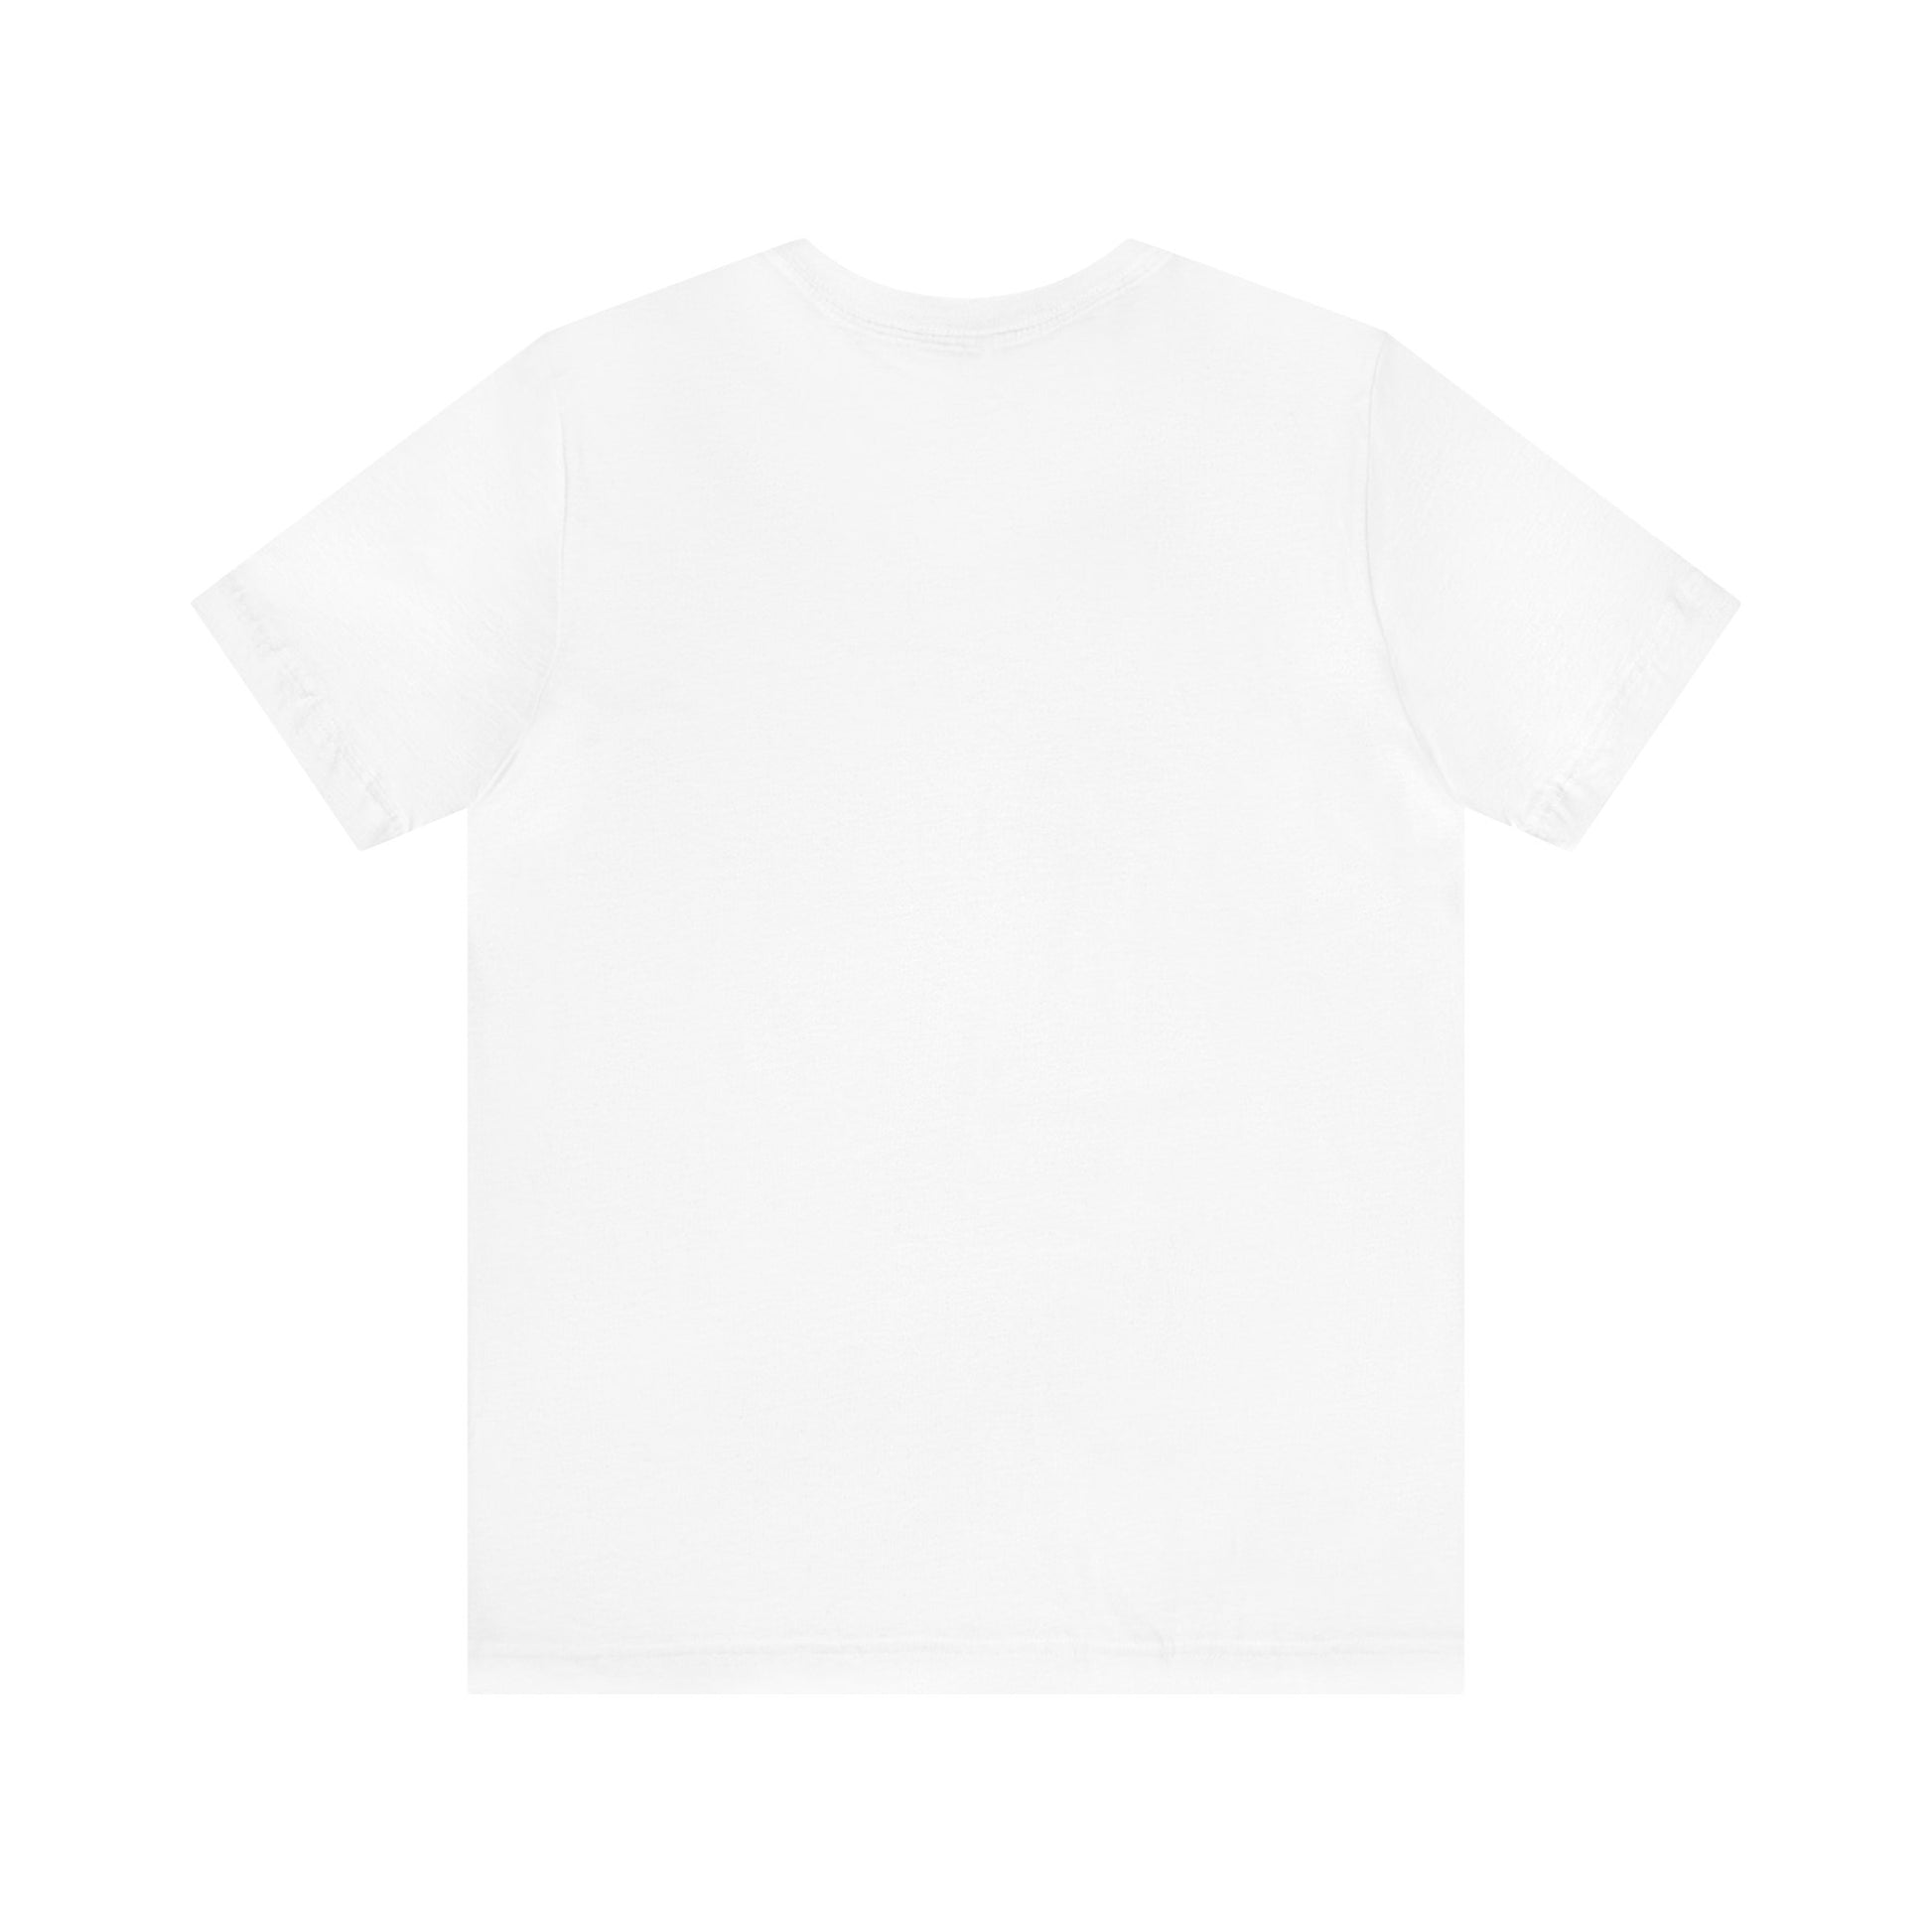 Megamoth ASD T-Shirt